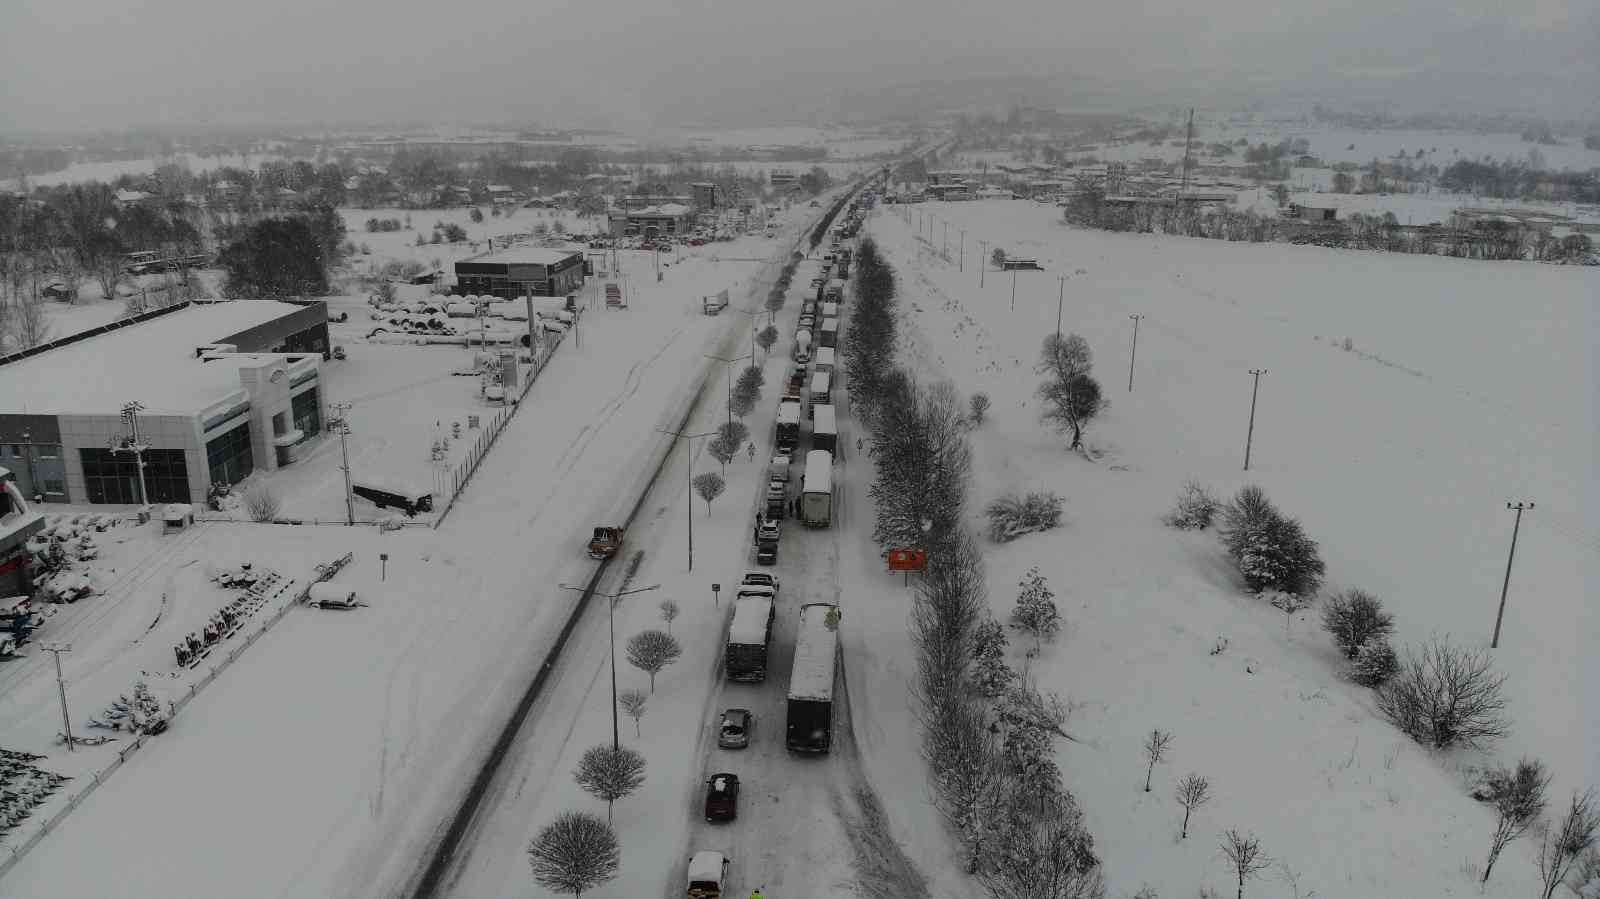 Bolu’da, D100 Karayolu Ankara yönü ulaşıma kapandı #bolu